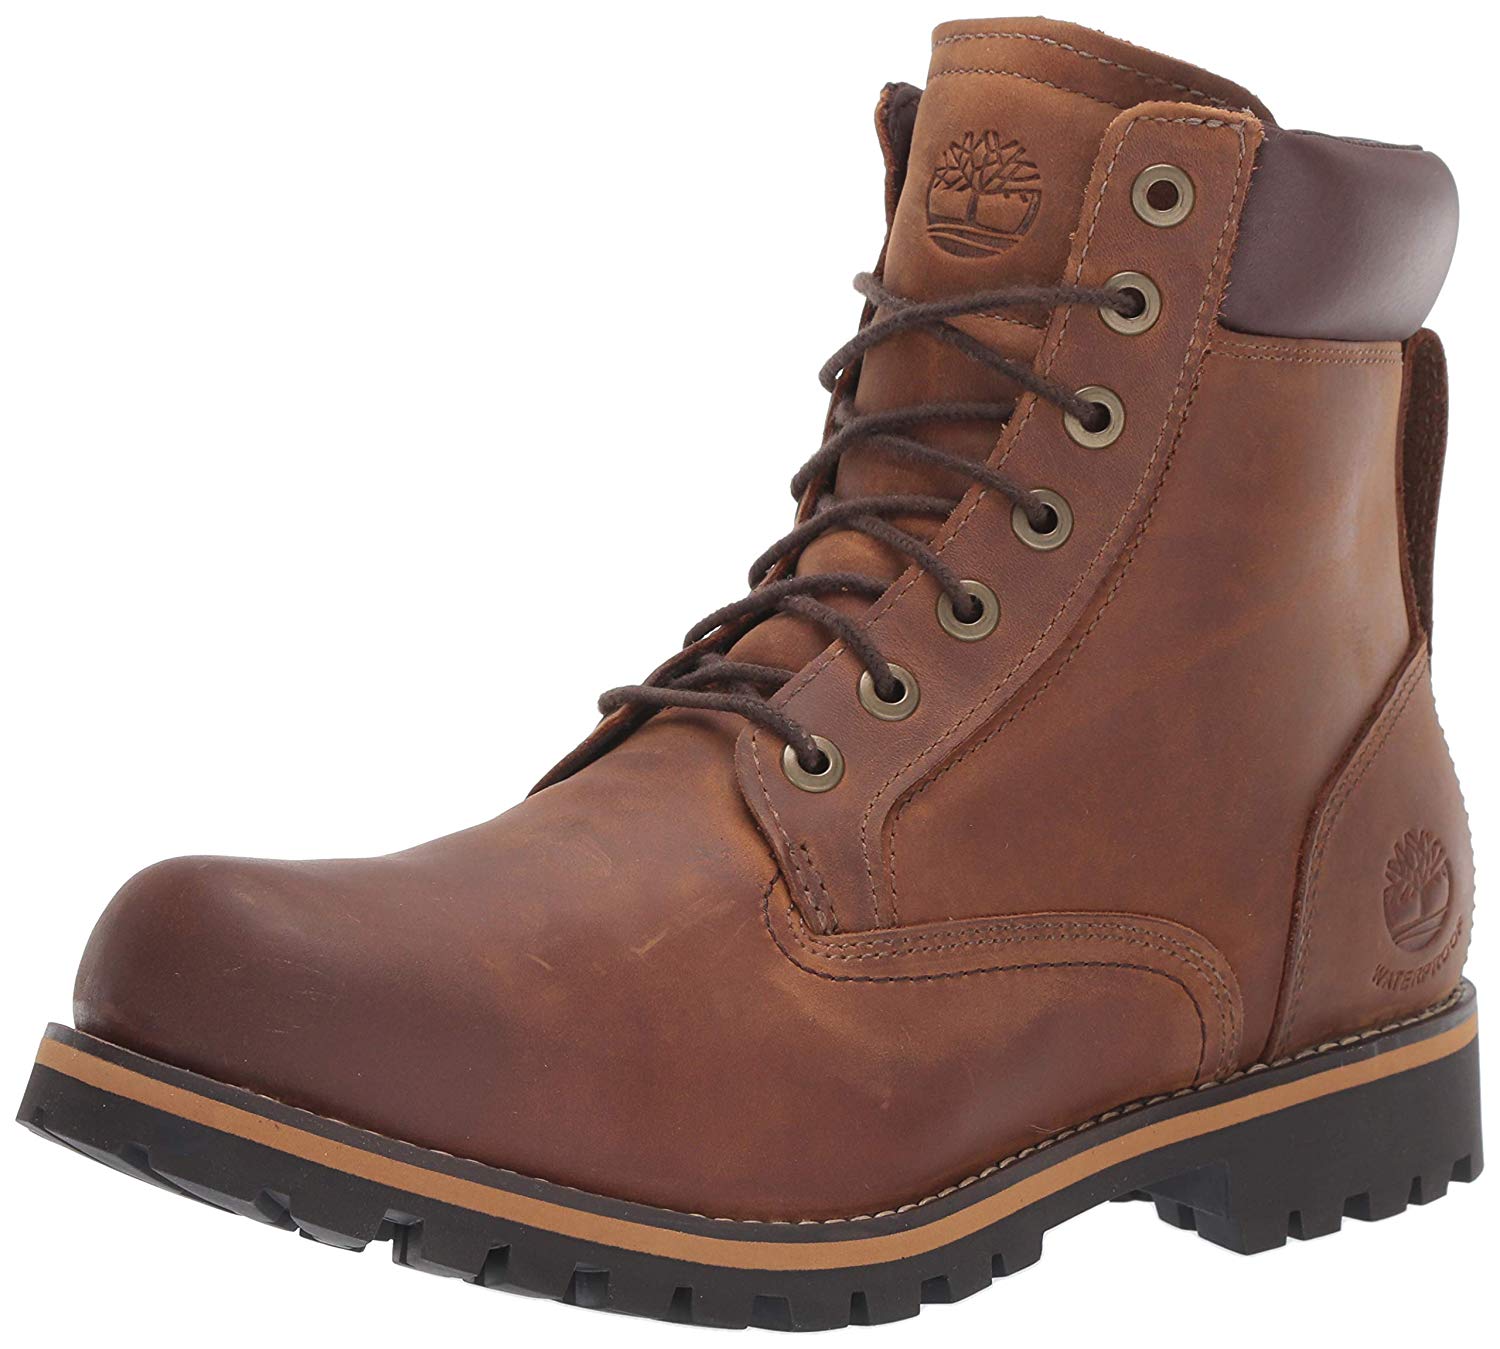 timberland boots men